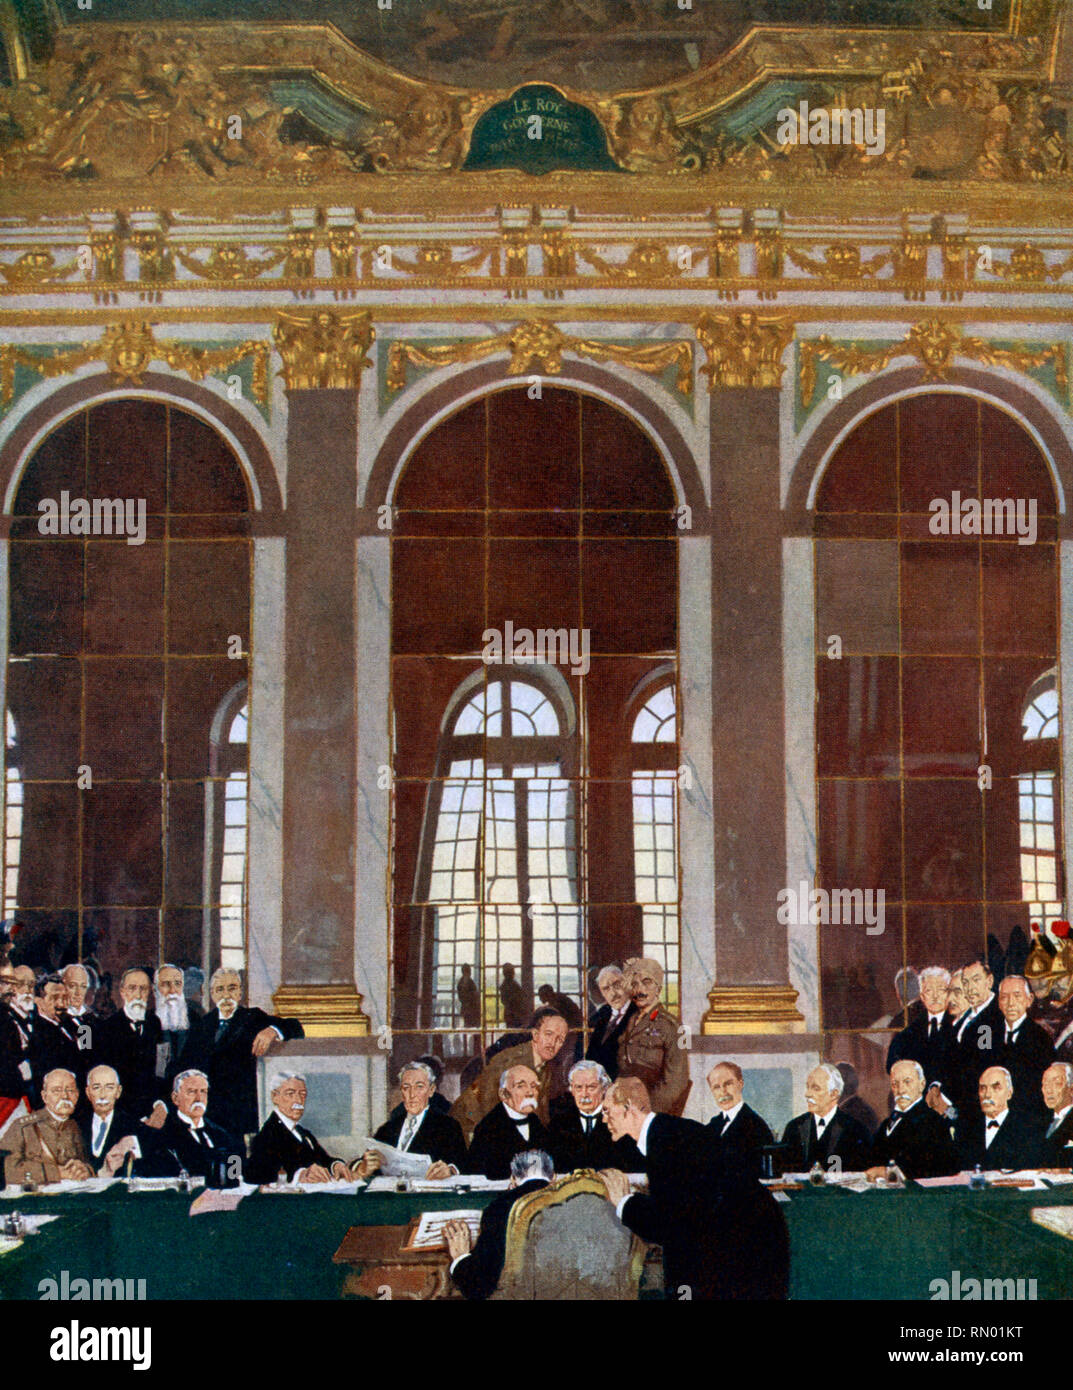 Die Unterzeichnung des Friedens im Spiegelsaal, Versailles, 28.. Juni 1919. Von William Orpen (1878-1931). Der Vertrag von Versailles (Traité de Versailles) war der wichtigste Friedensvertrag, der den Ersten Weltkrieg zu Ende brachte Stockfoto